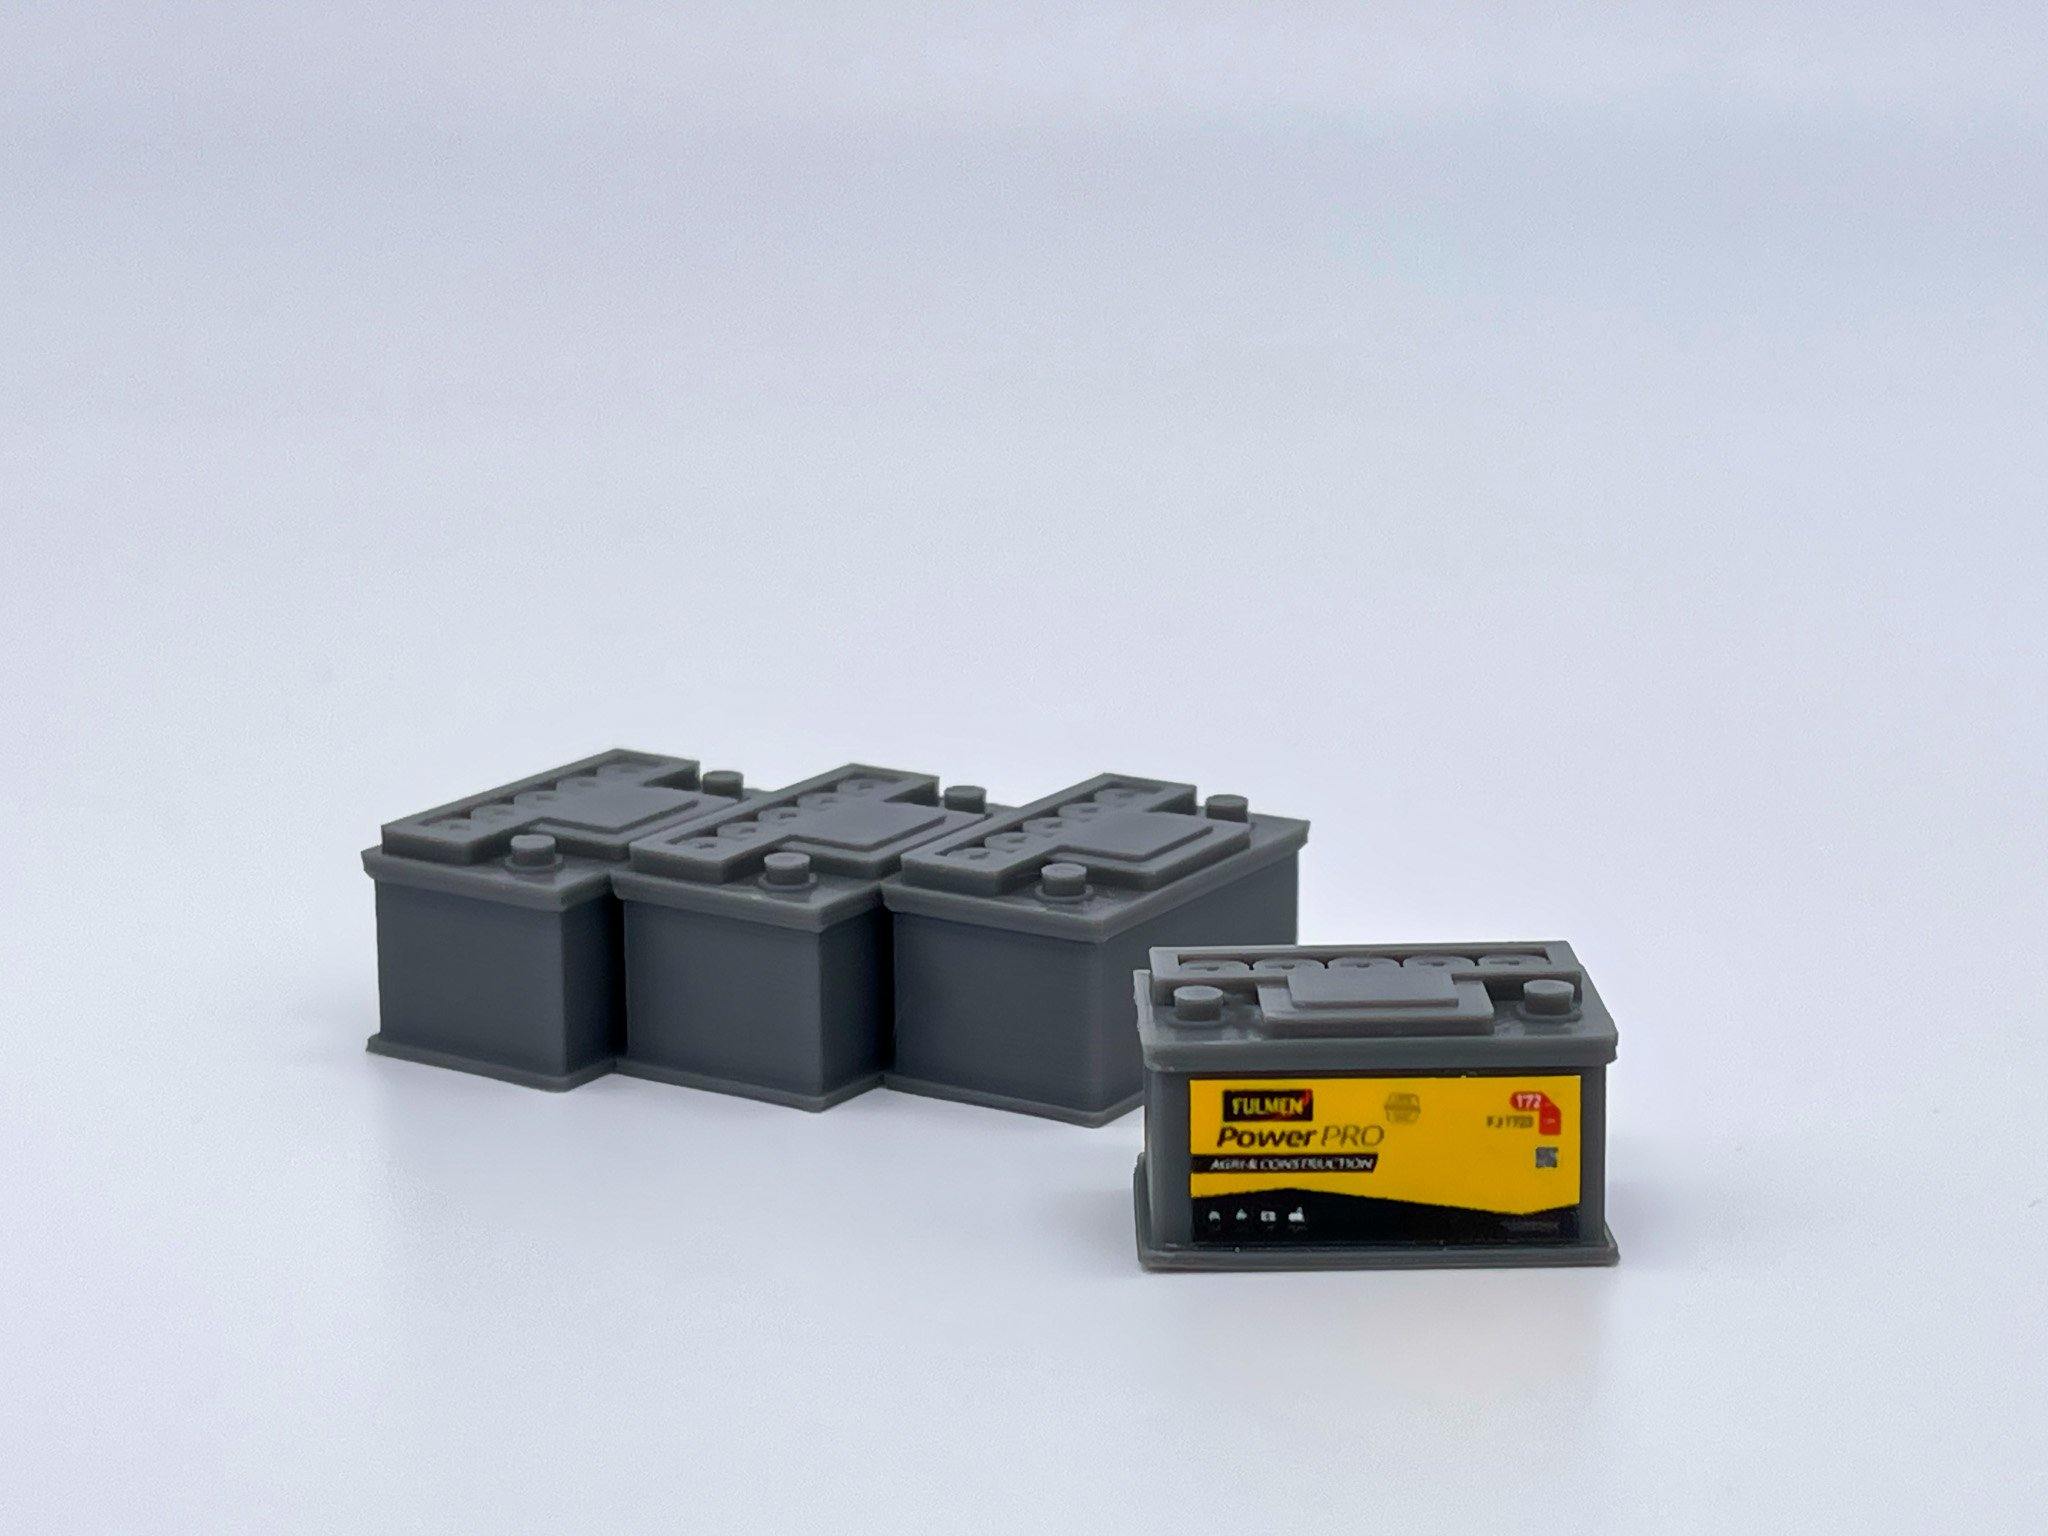 Batterie Fulmen PowerPRO